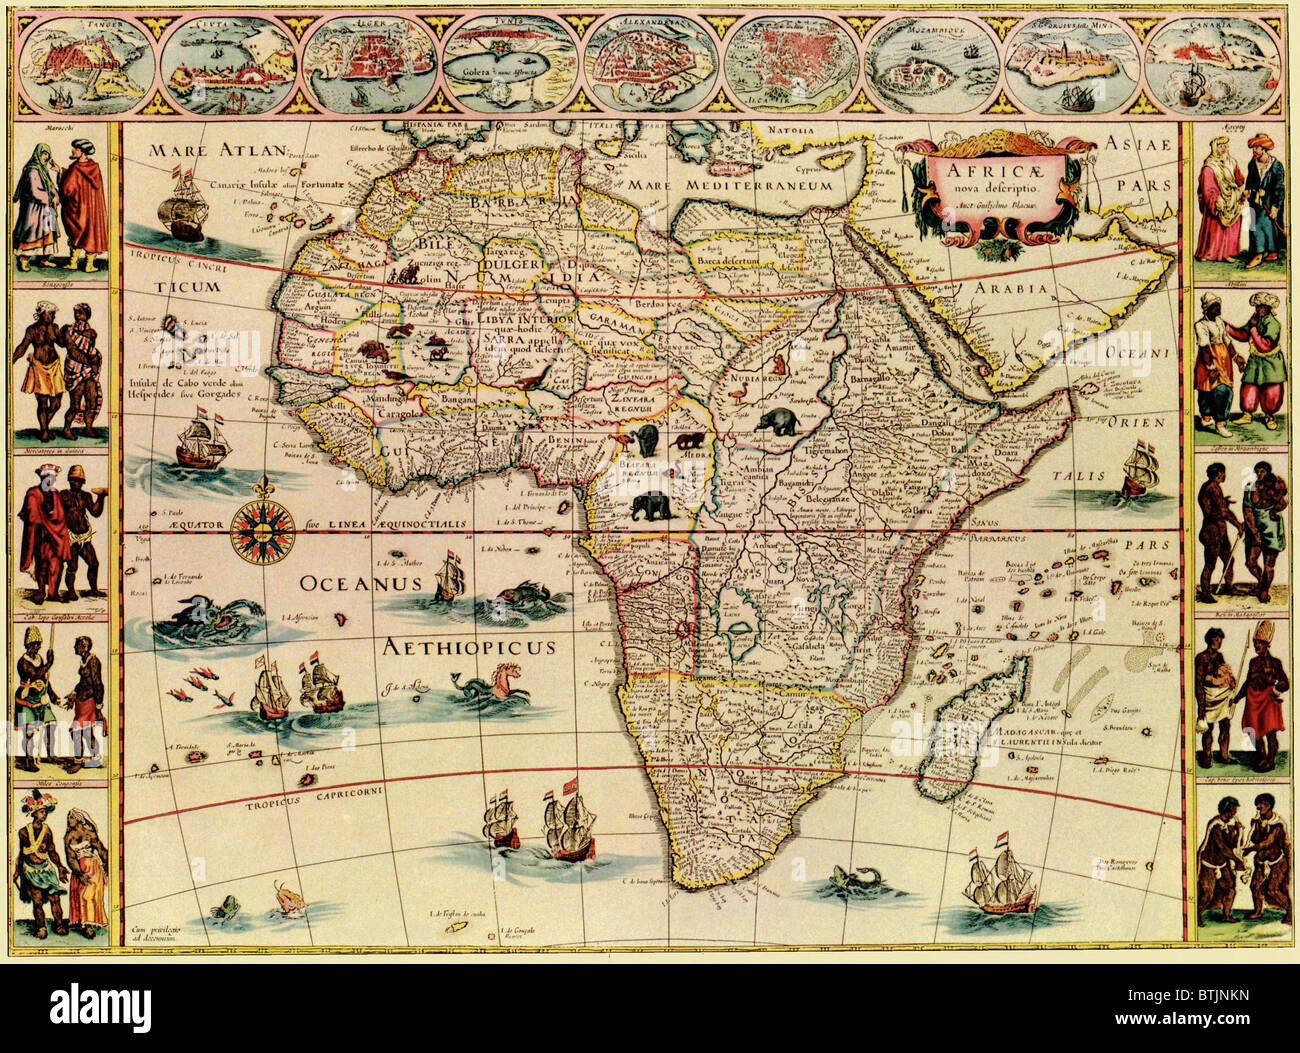 Mapa de África de 1660. Borde superior muestra las ciudades africanas, y bordes laterales muestran los hombres y las mujeres de los pueblos africanos. Foto de stock